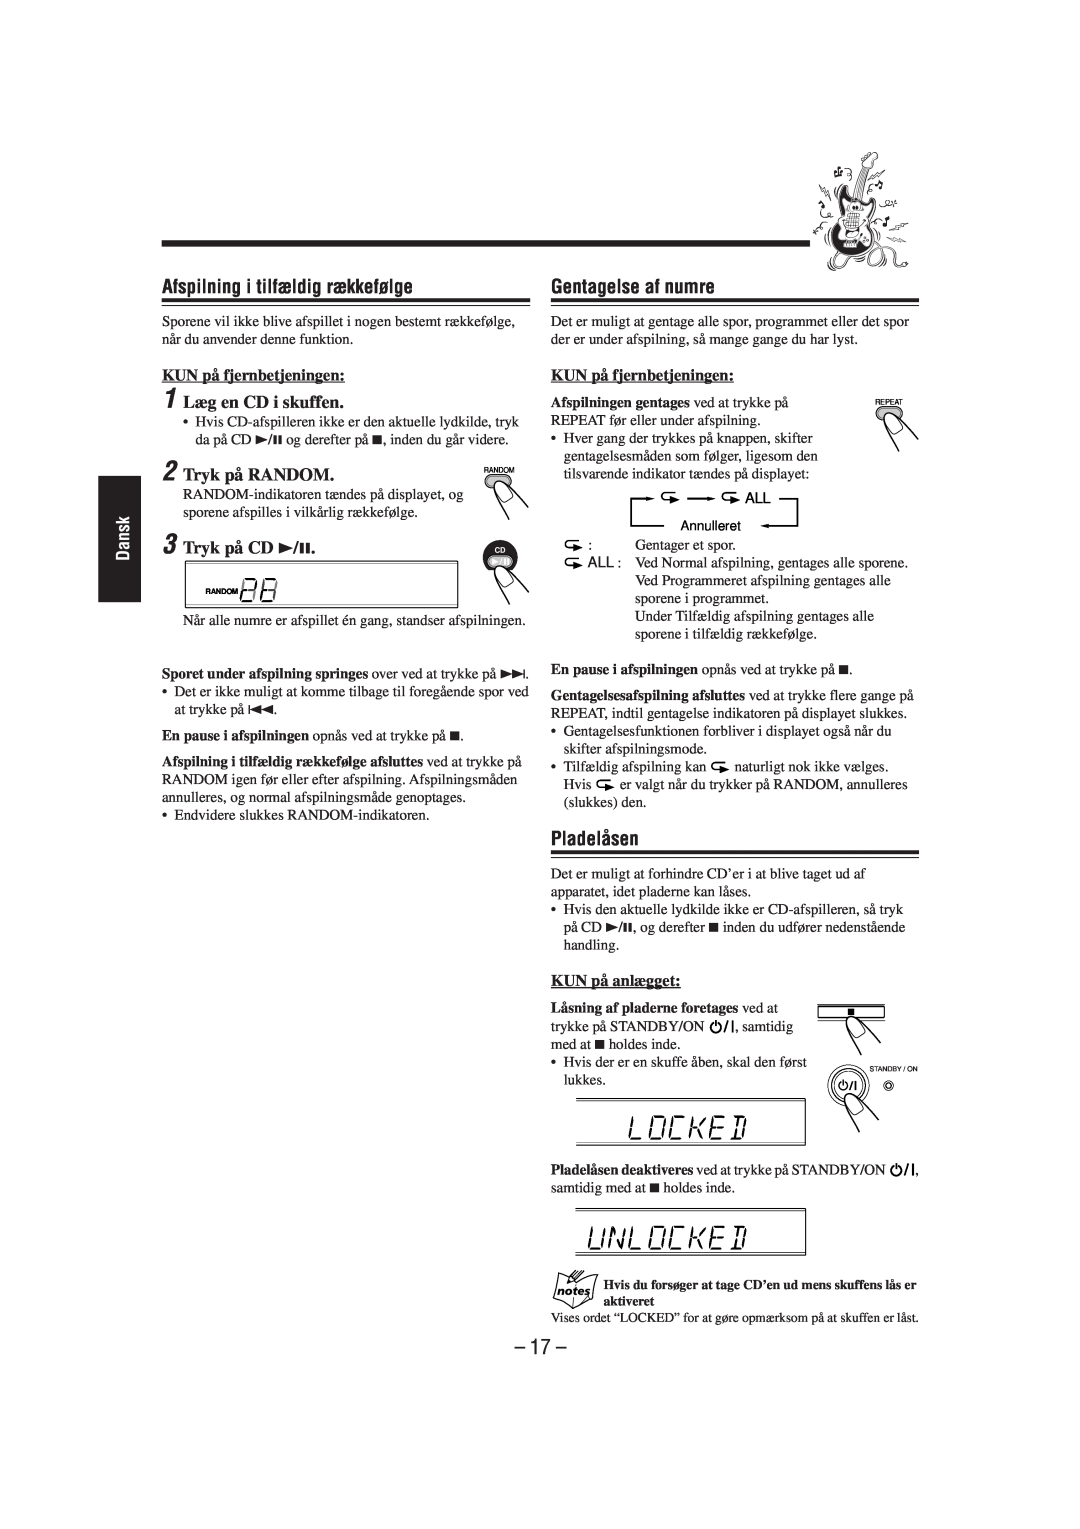 JVC SP-UXL30 manual Afspilning i tilfældig rækkefølge, Gentagelse af numre, Pladelåsen, Tryk på RANDOM, KUN på anlægget, 17 